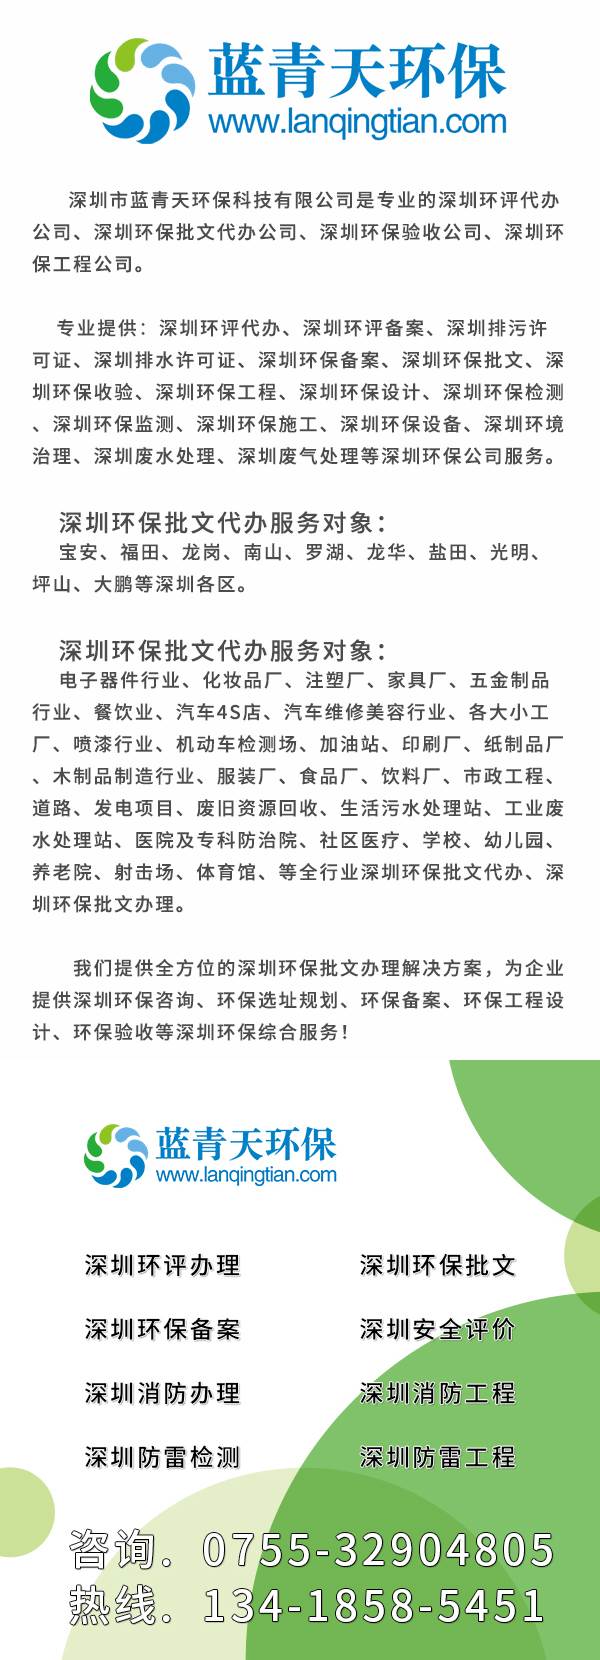 深圳龙华工厂环评表办理流程,深圳龙岗工厂工业企业的环评手续办理流程图